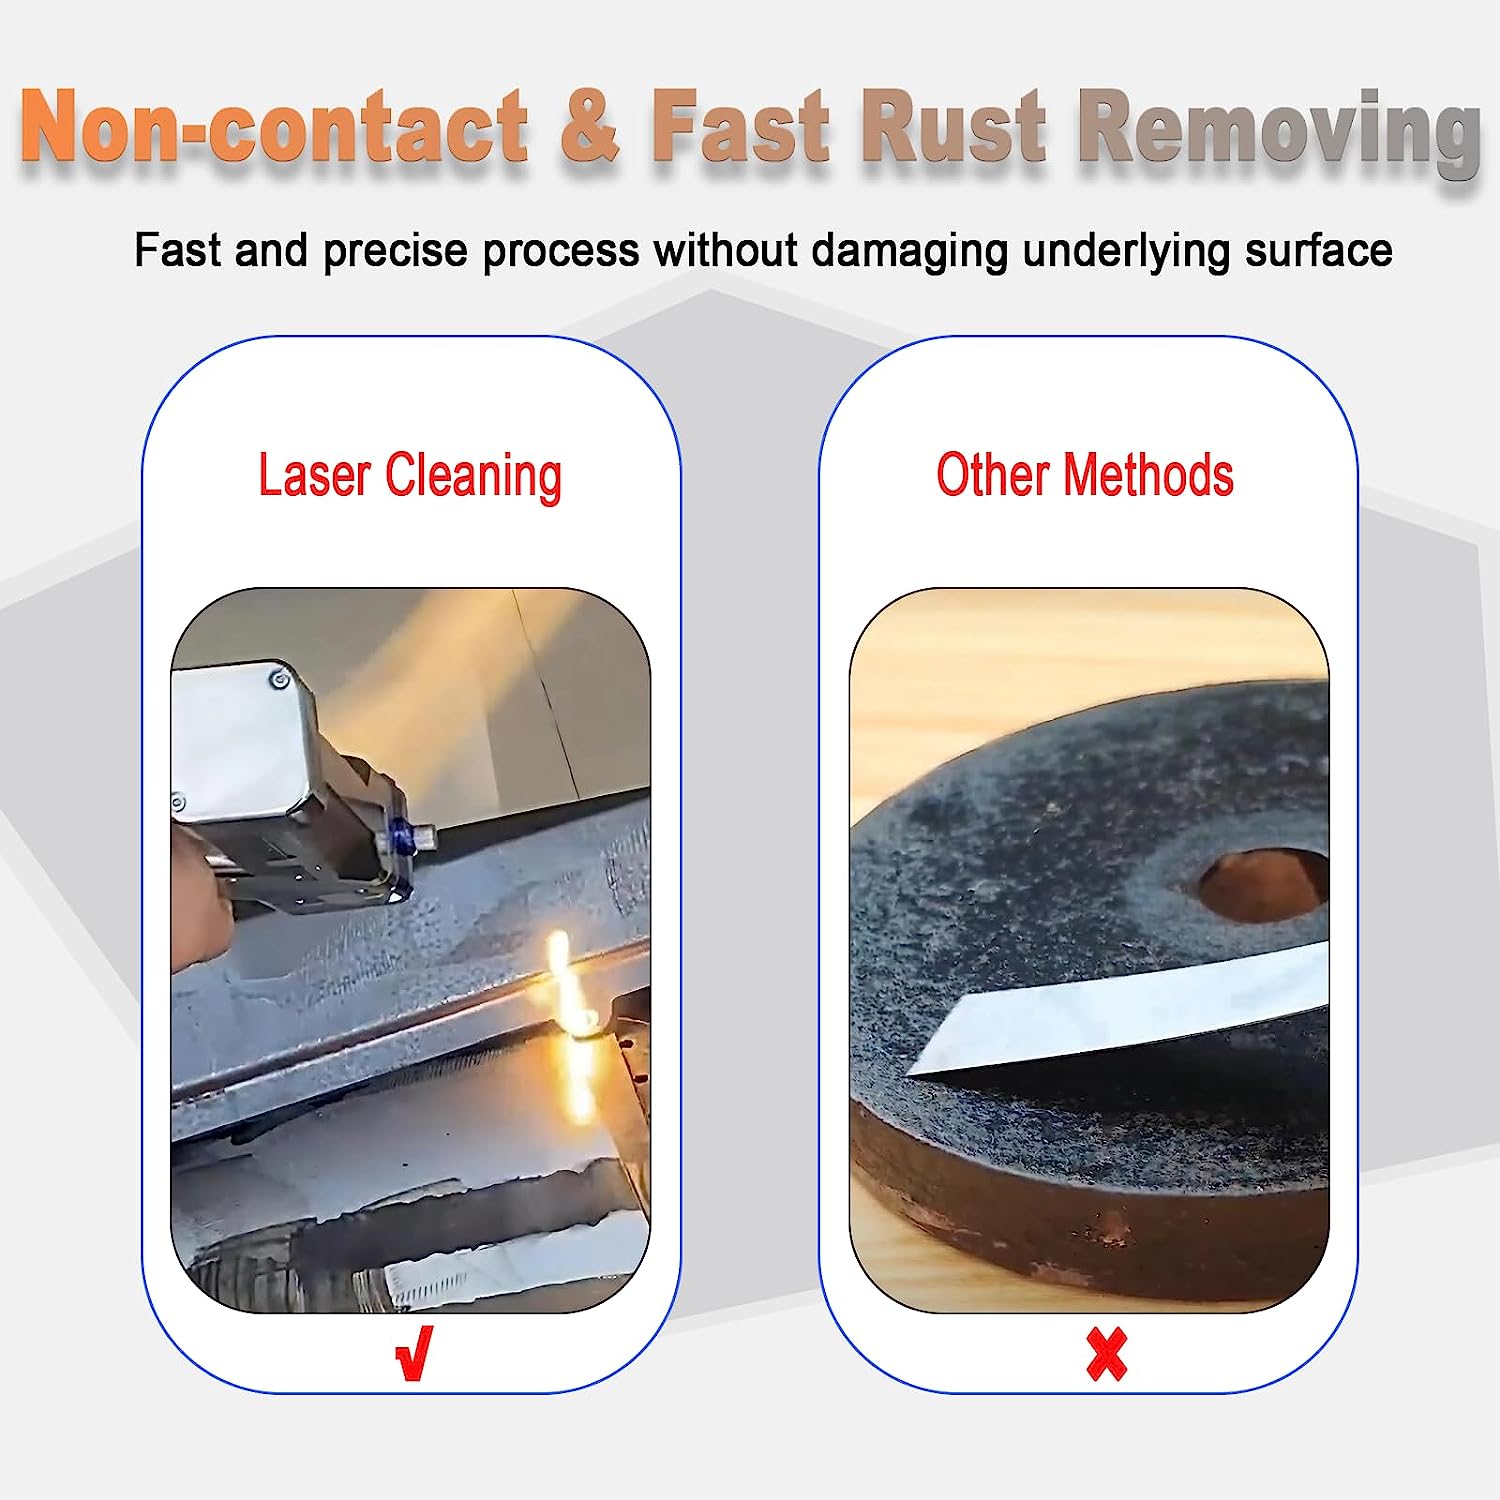 Fournisseurs et fabricants de rouille pour le nettoyage au laser à bas prix  - Application de la rouille pour le nettoyage au laser - Sino-Galvo